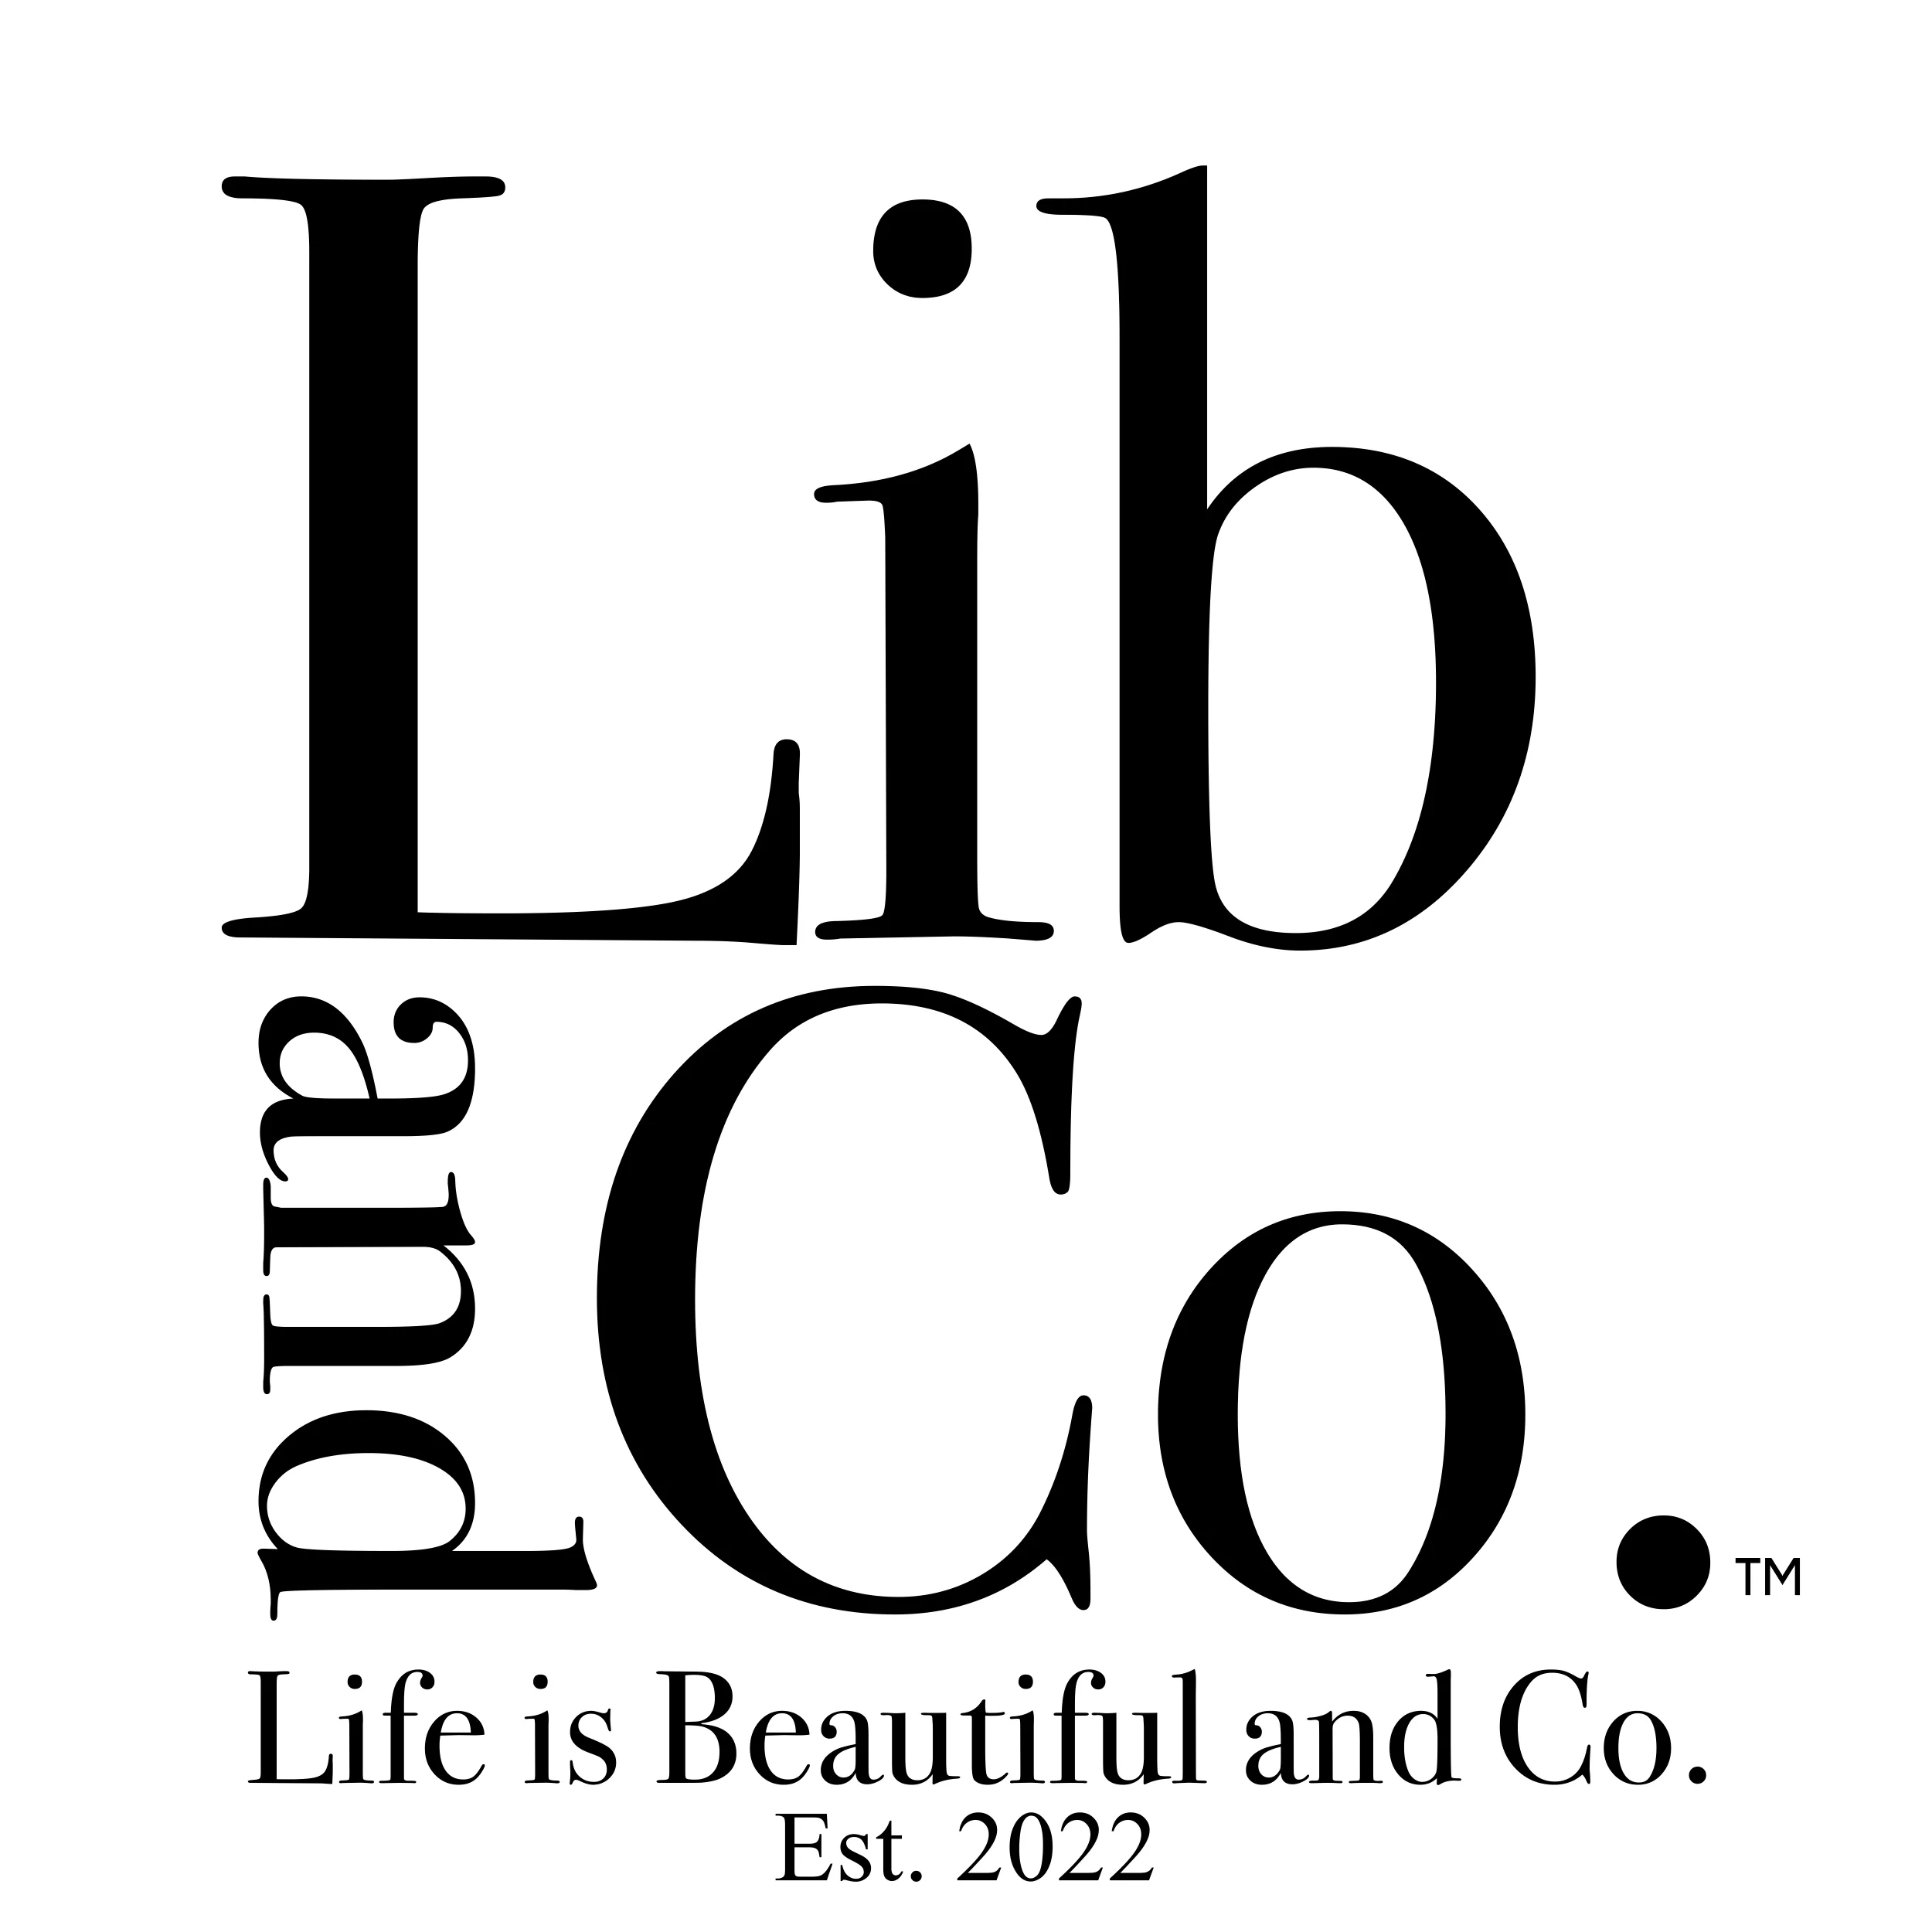 LIB & CO. US in 